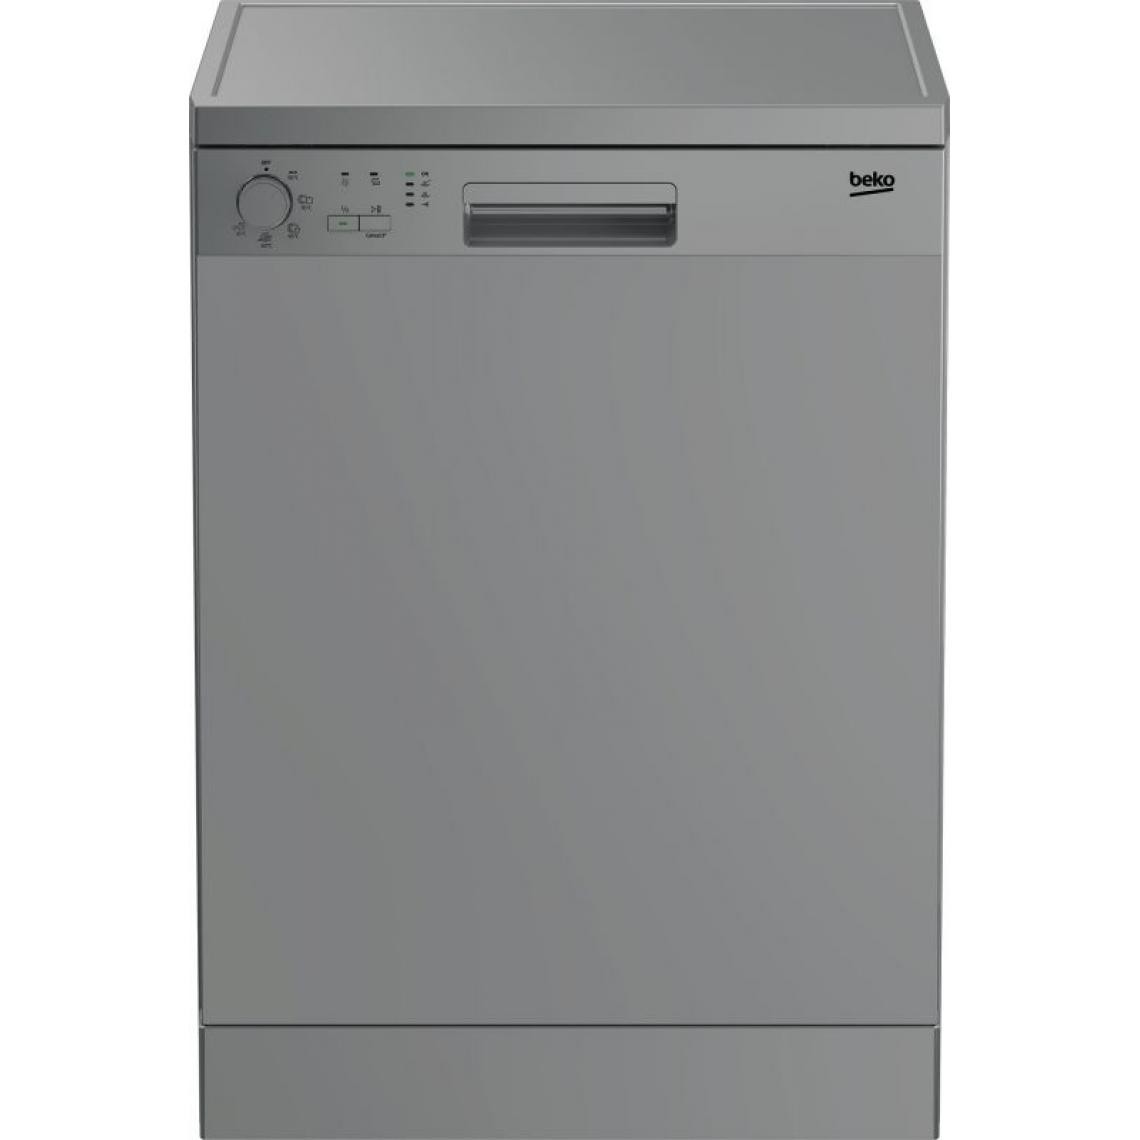 Acces Editions - Beko DFN05321S lave-vaisselle Autoportante 13 couverts E - Lave-vaisselle